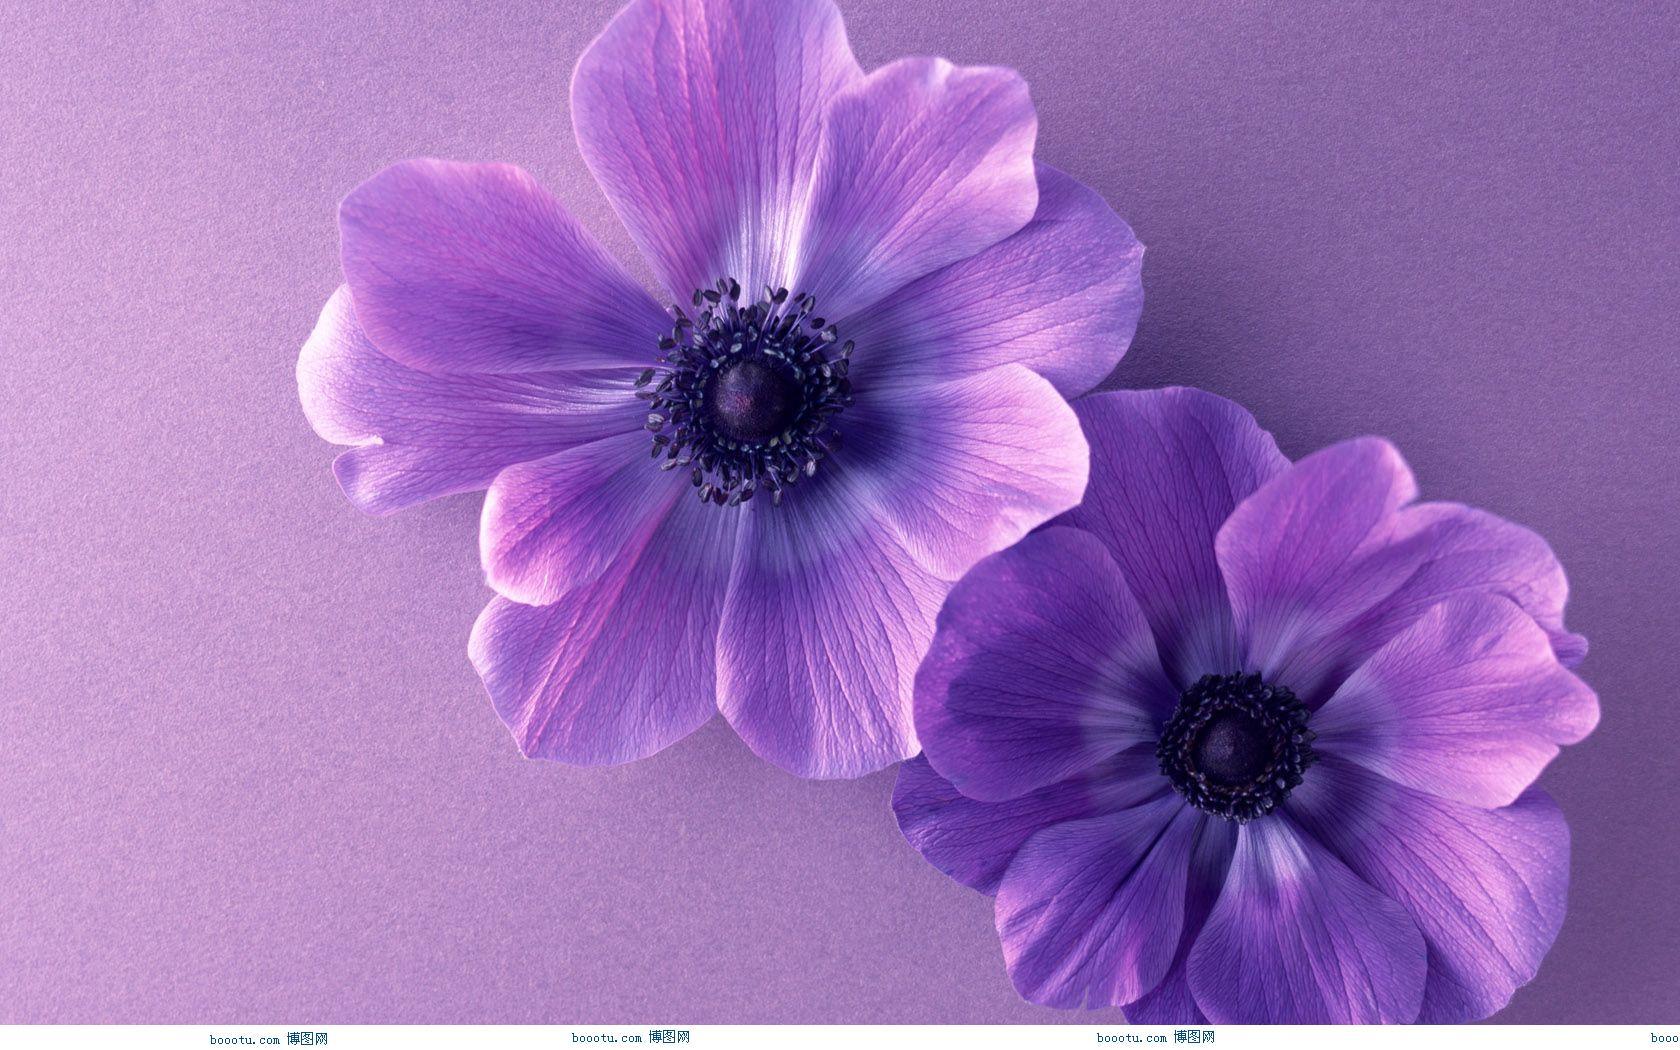 Cute Purple Wallpaper 7260 Wallpaper. hdesktopict